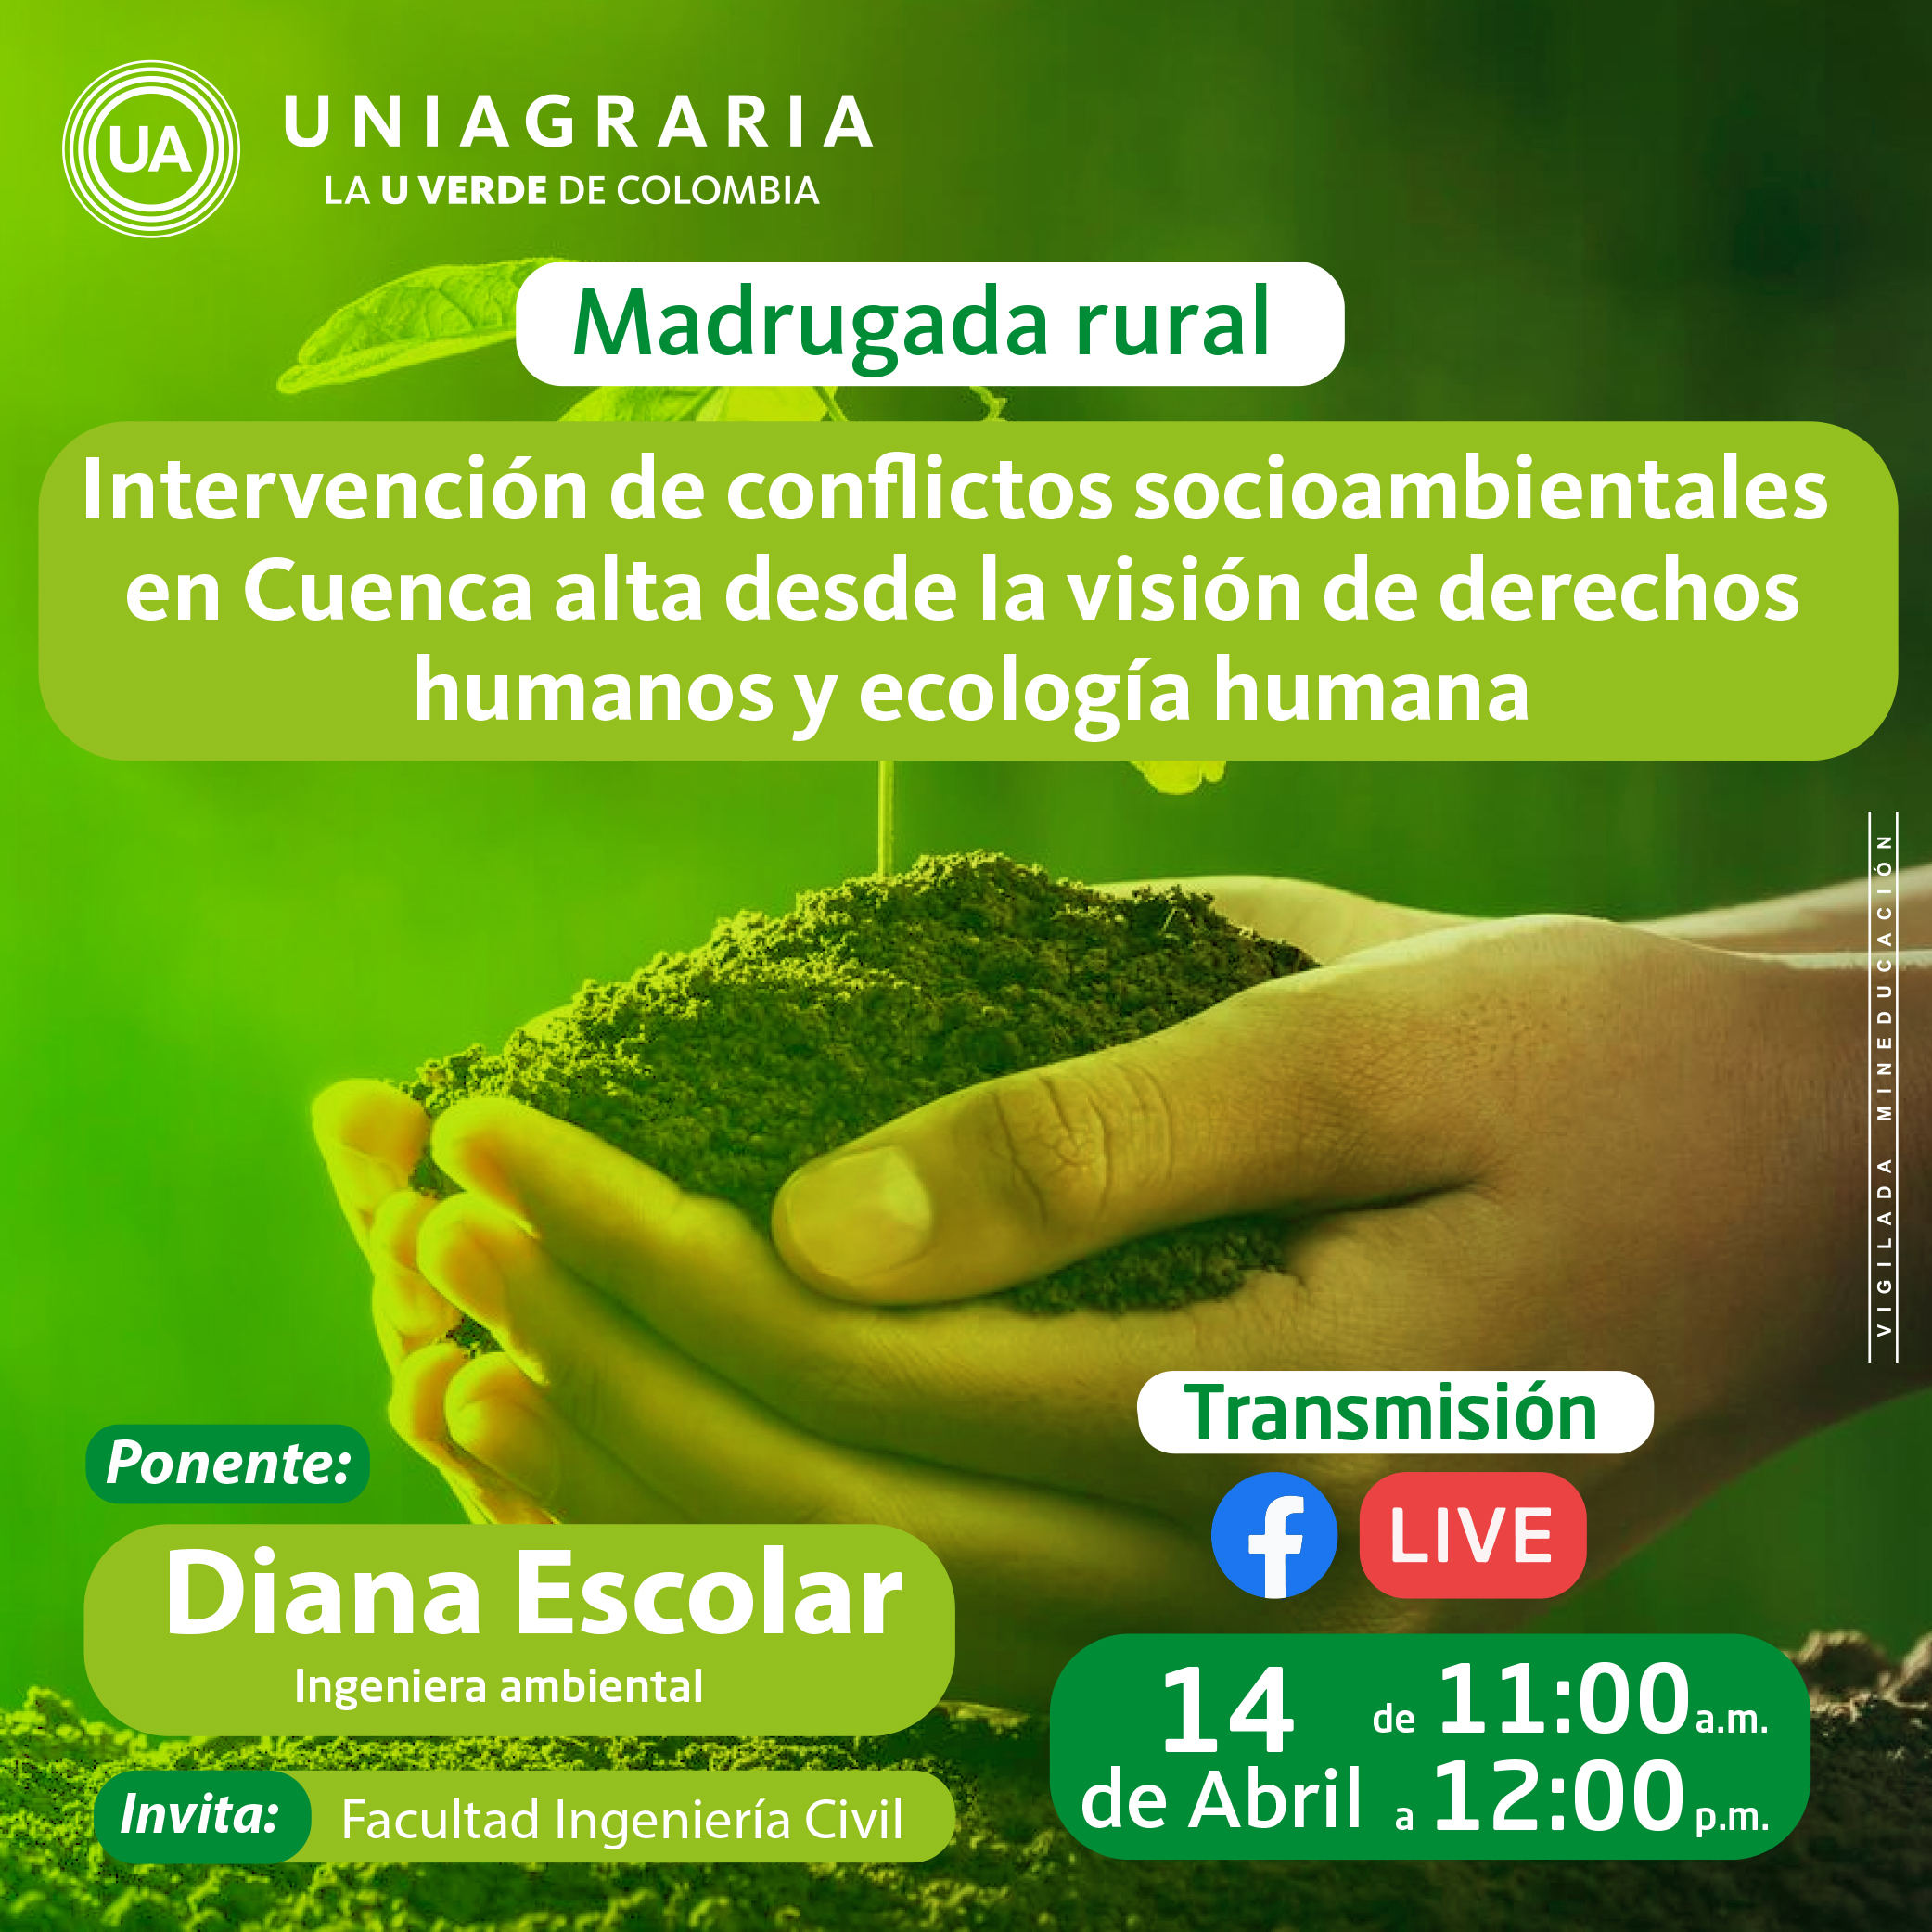 Madrugada rural: Intervención de conflictos socioambientales en Cuenca alta